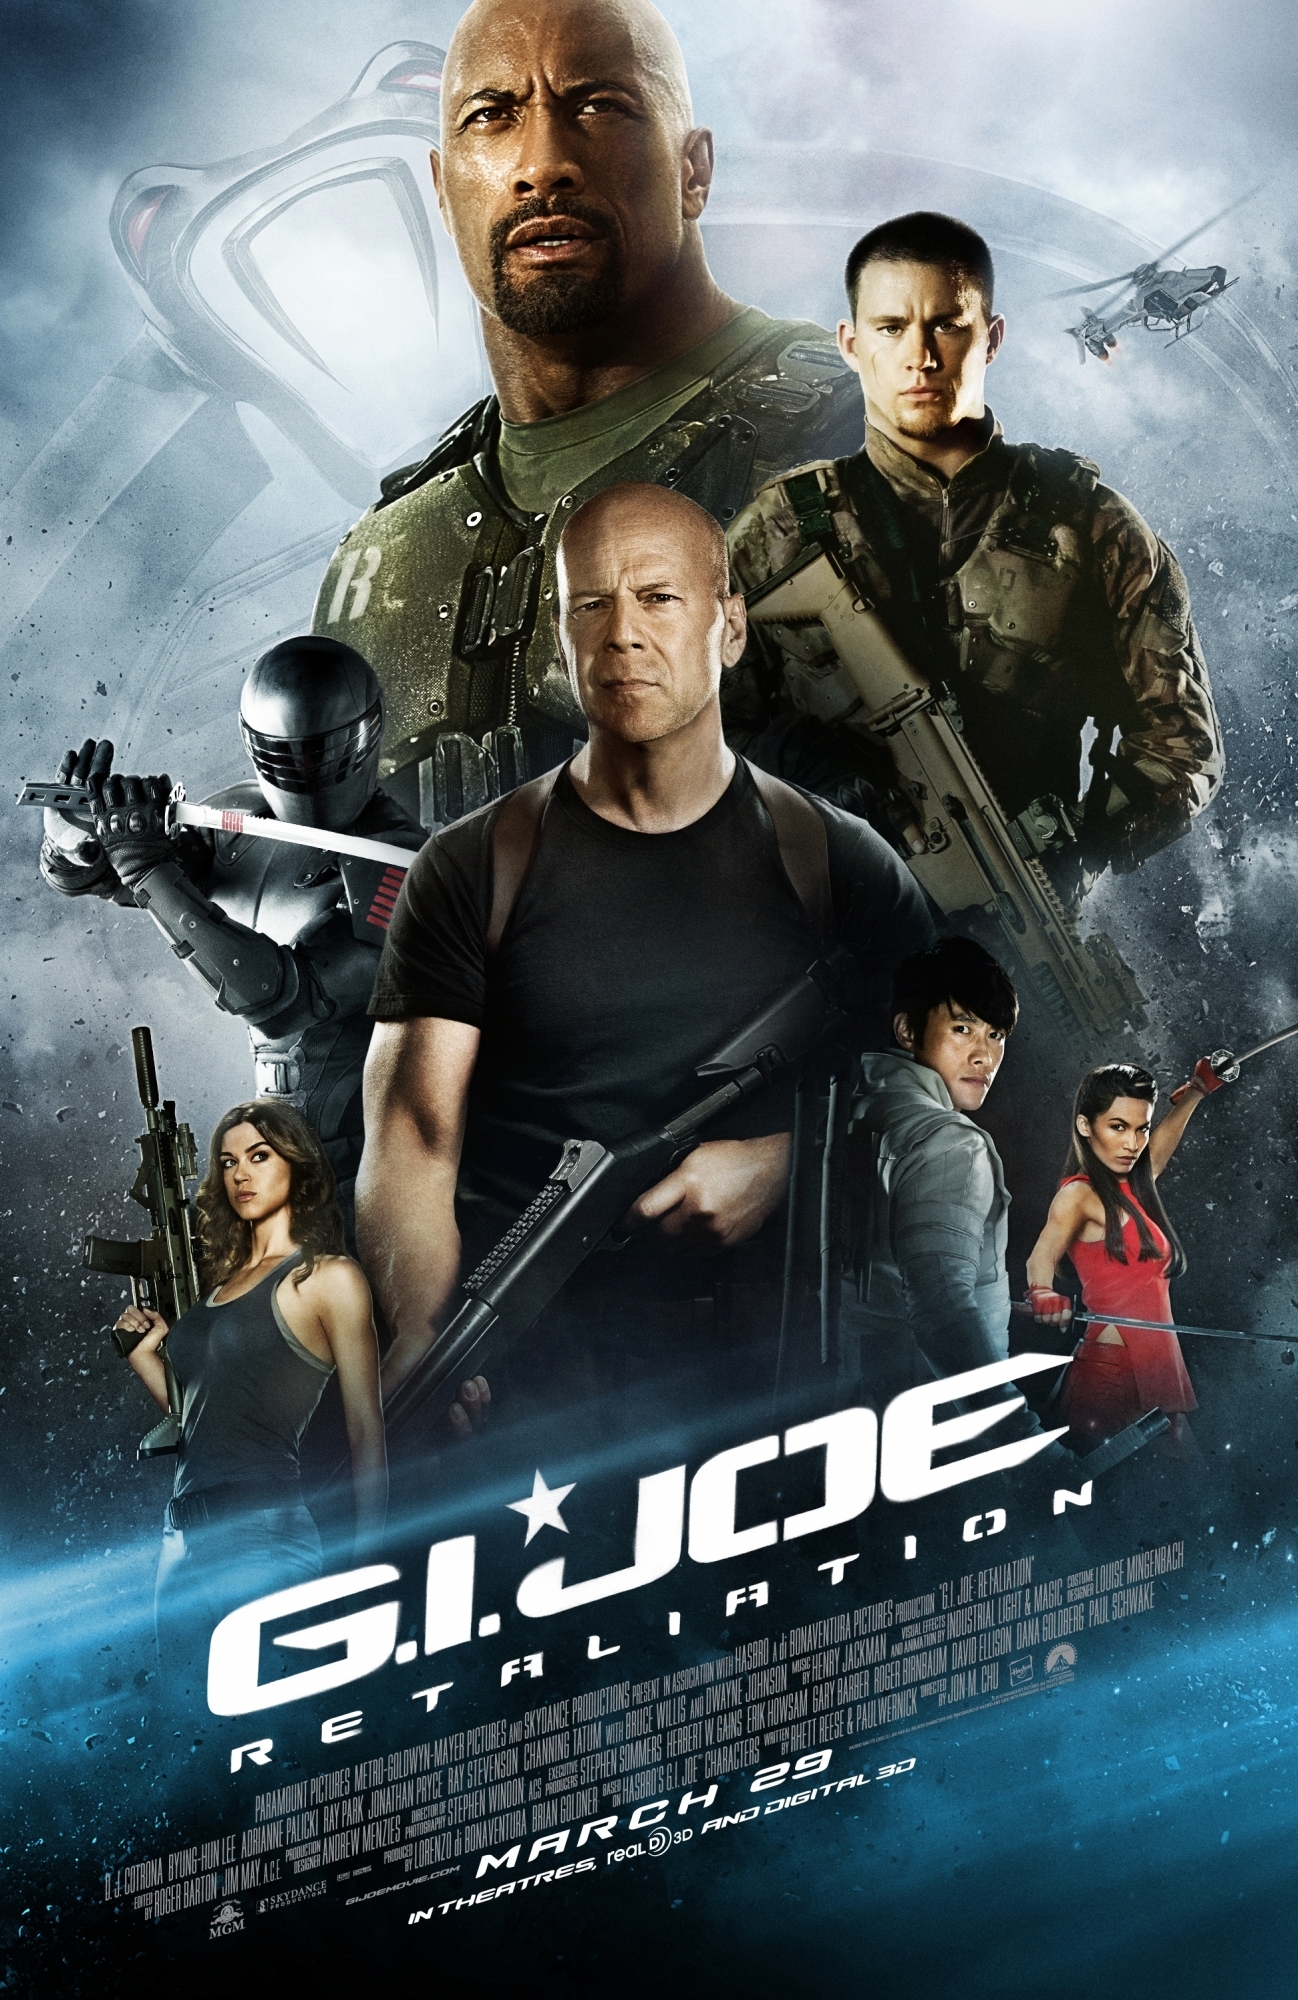 G.I. Joe 2 Retaliation(2013) จีไอโจ 2 สงครามระห่ำแค้นคอบร้าทมิฬ Dwayne Johnson